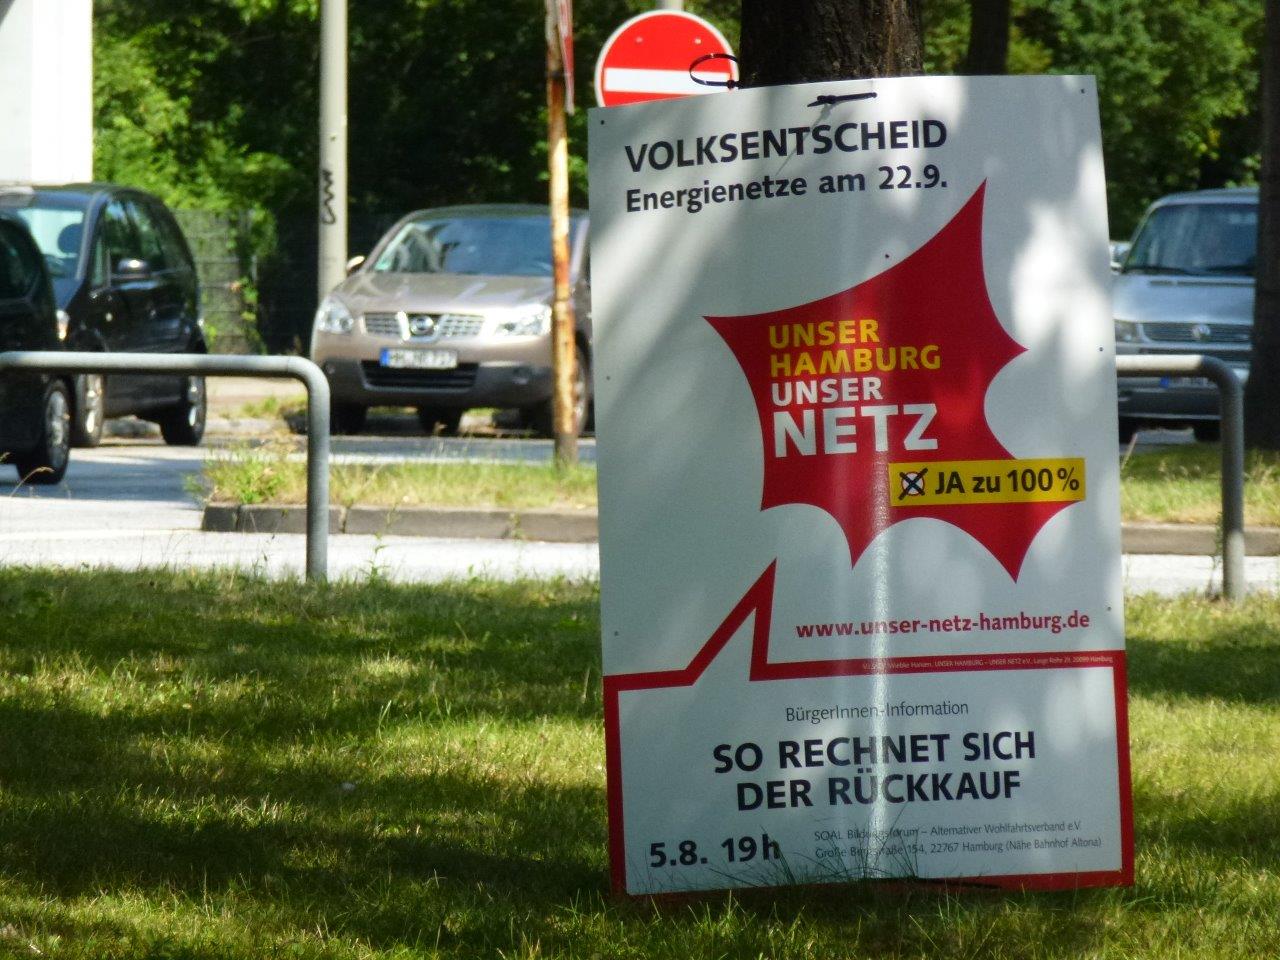 Volksentscheide in Berlin und Hamburg – Die Netze für alle!